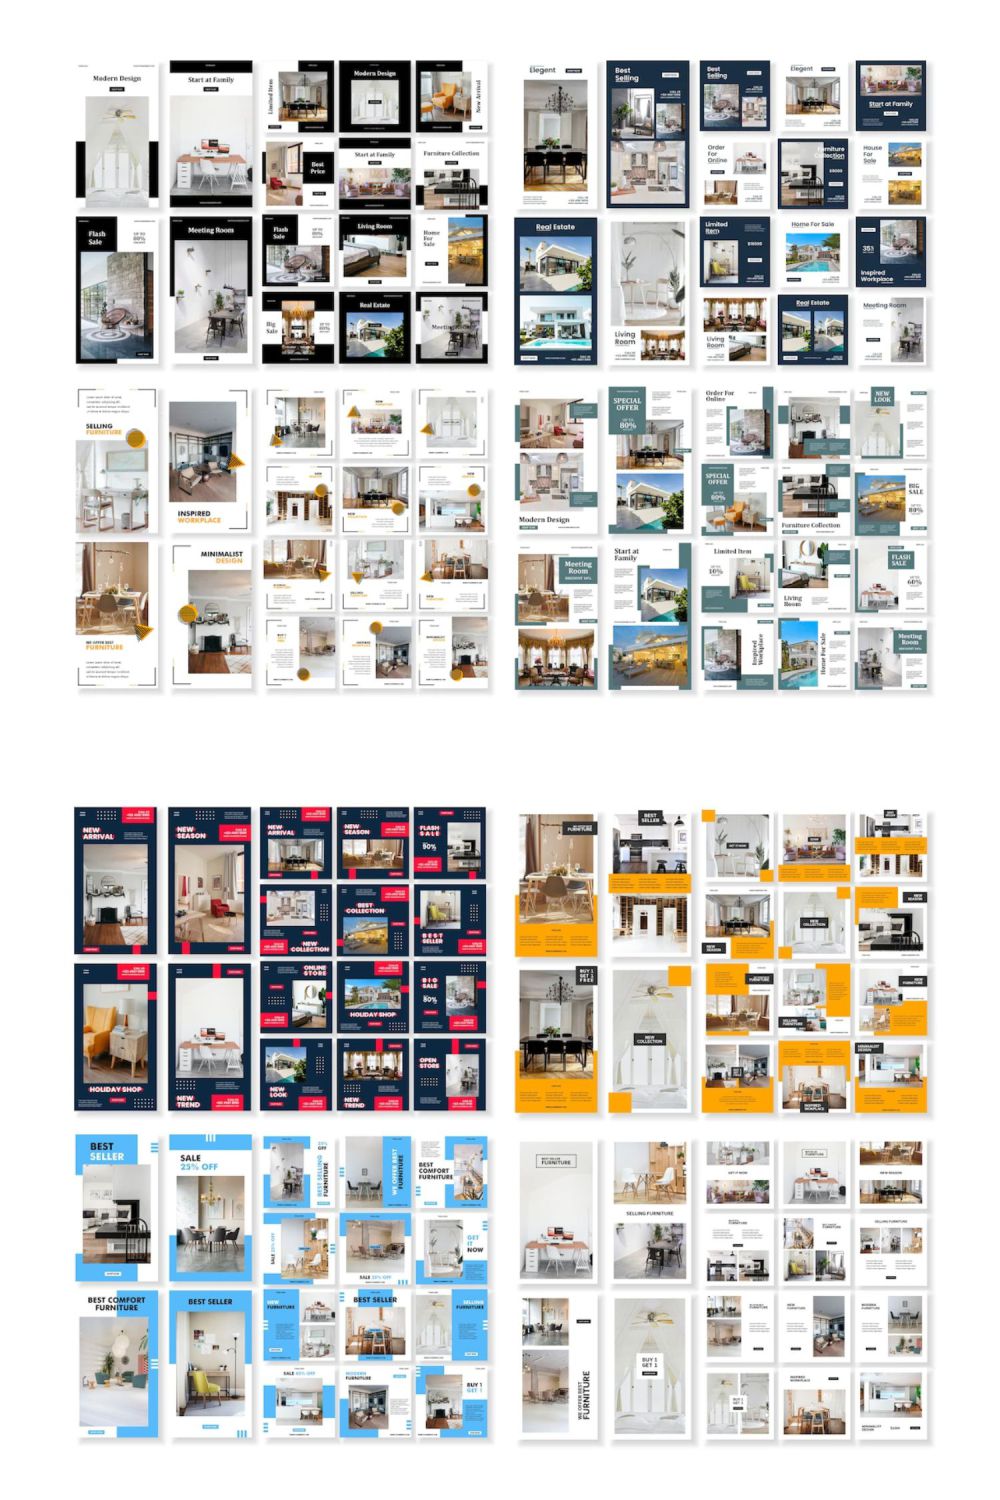 Social Media Bundle Template For Real Estate Pinterest Image.